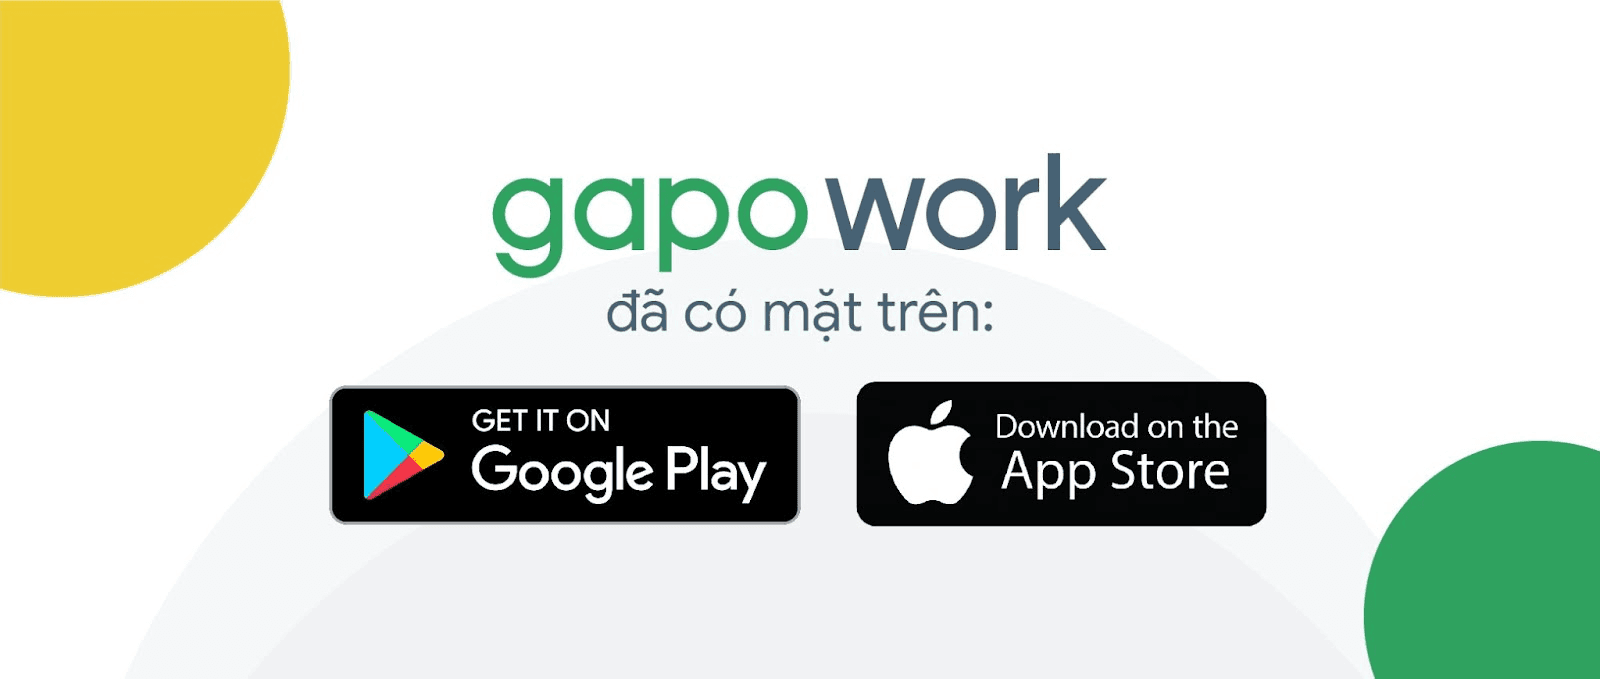 Hướng dẫn sử dụng GapoWork cho nhân viên mới - Ảnh 2